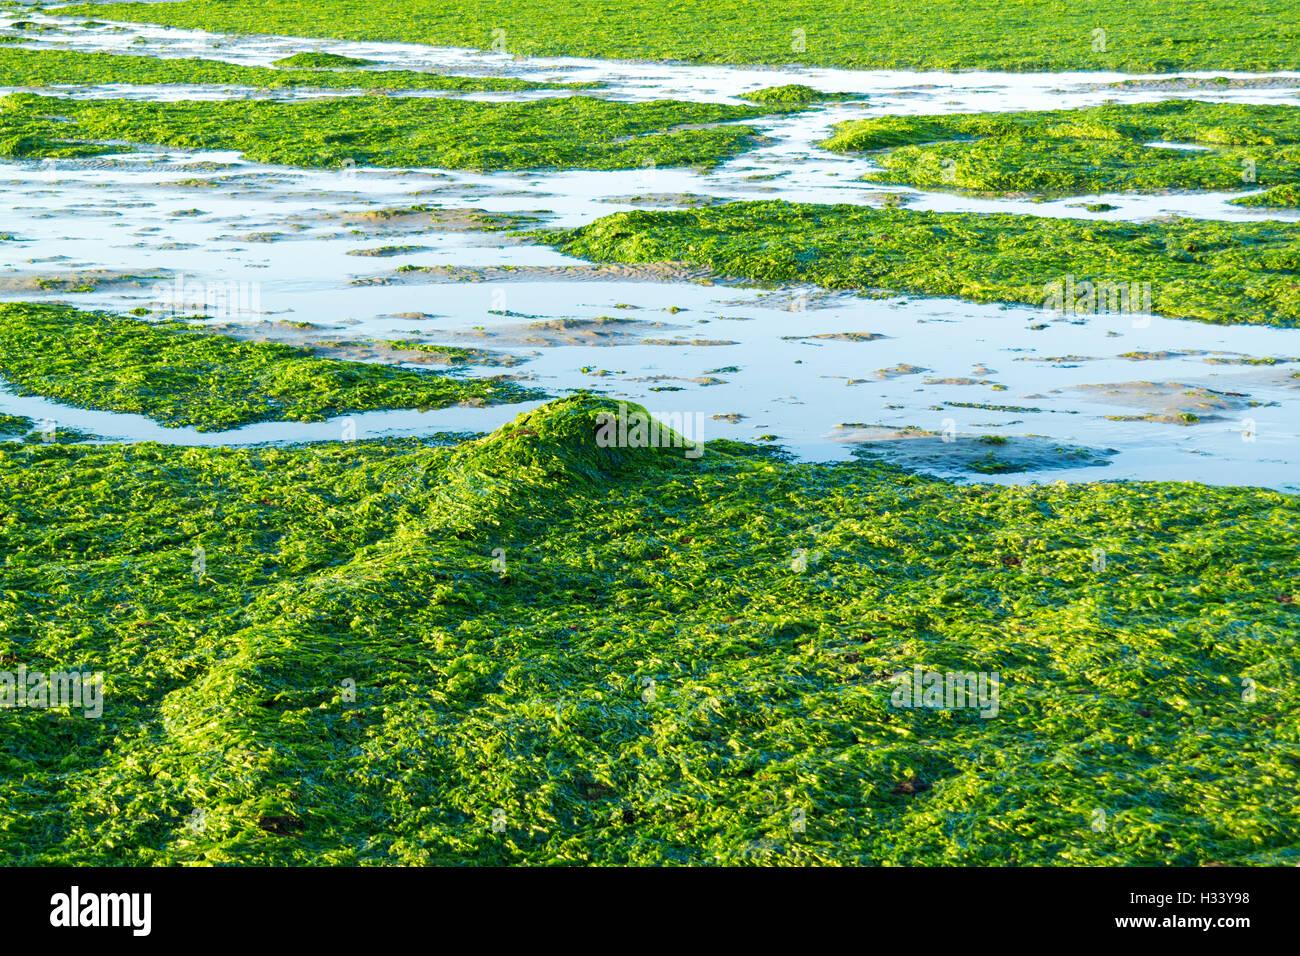 Catena di ancoraggio coperti con lattuga di mare su saltwater tidal flats a bassa marea di Waddensea, Paesi Bassi Foto Stock